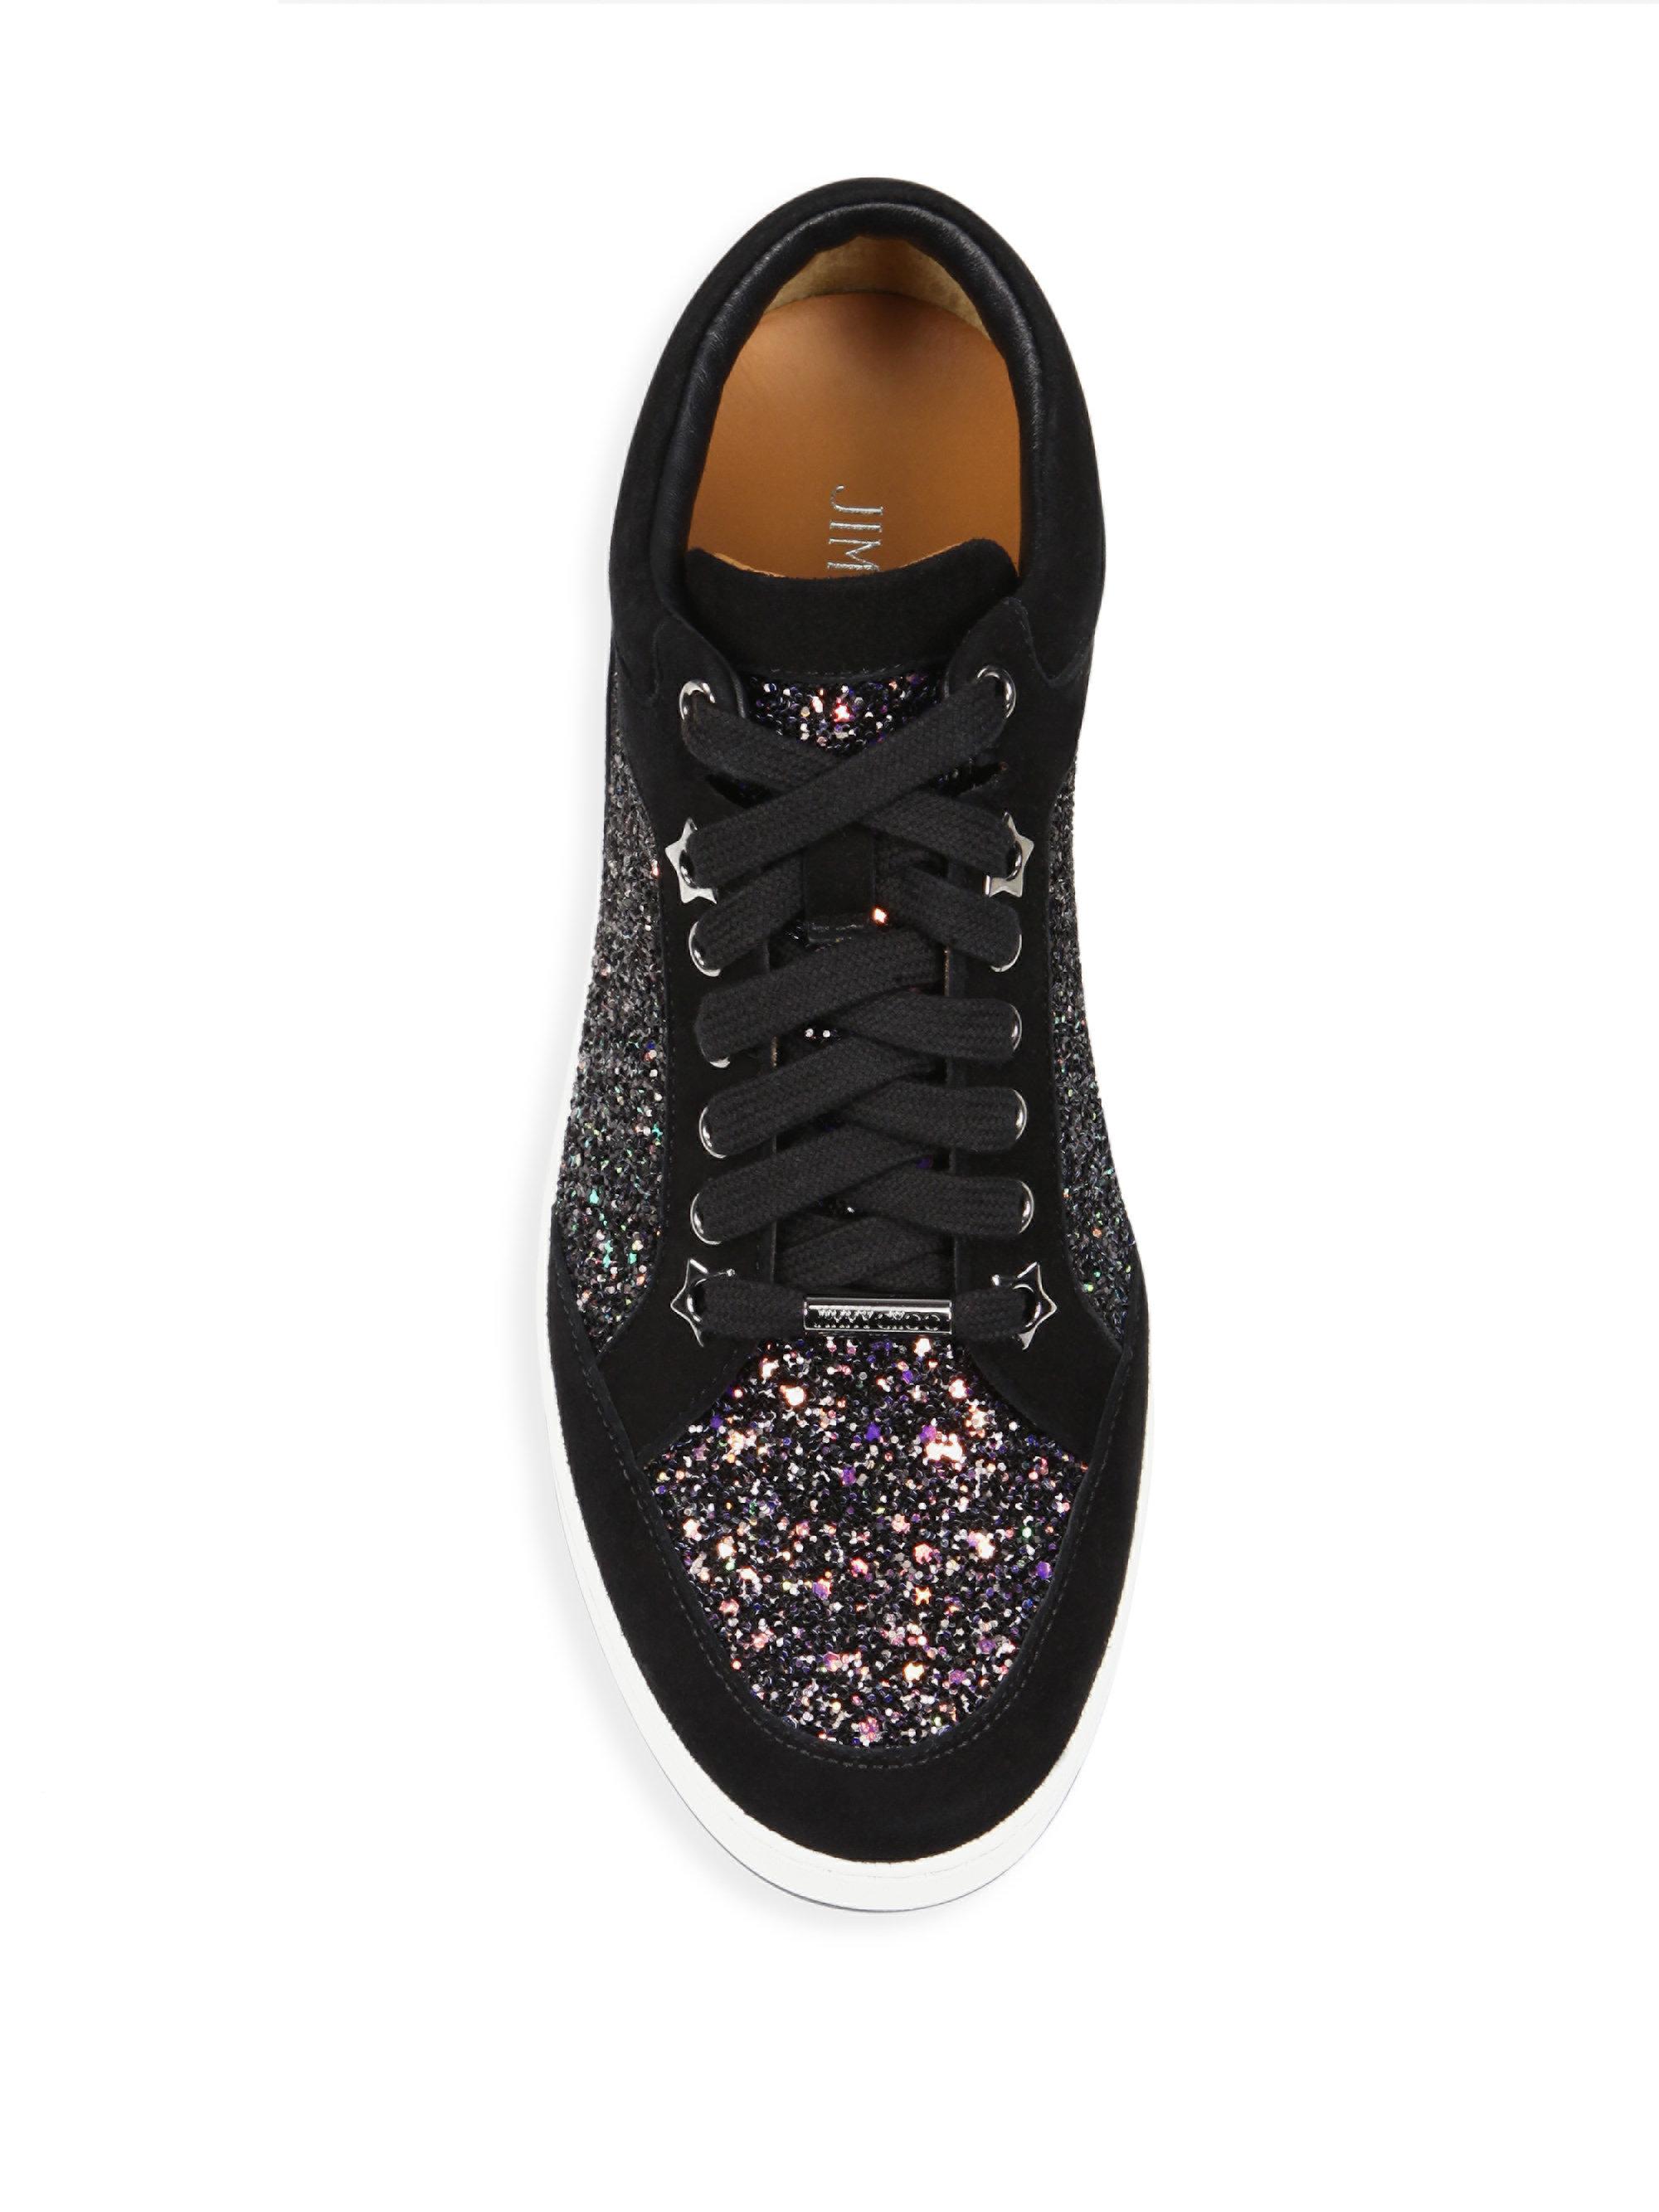 Jimmy Choo Miami Glitter & Suede Sneakers in Black - Lyst